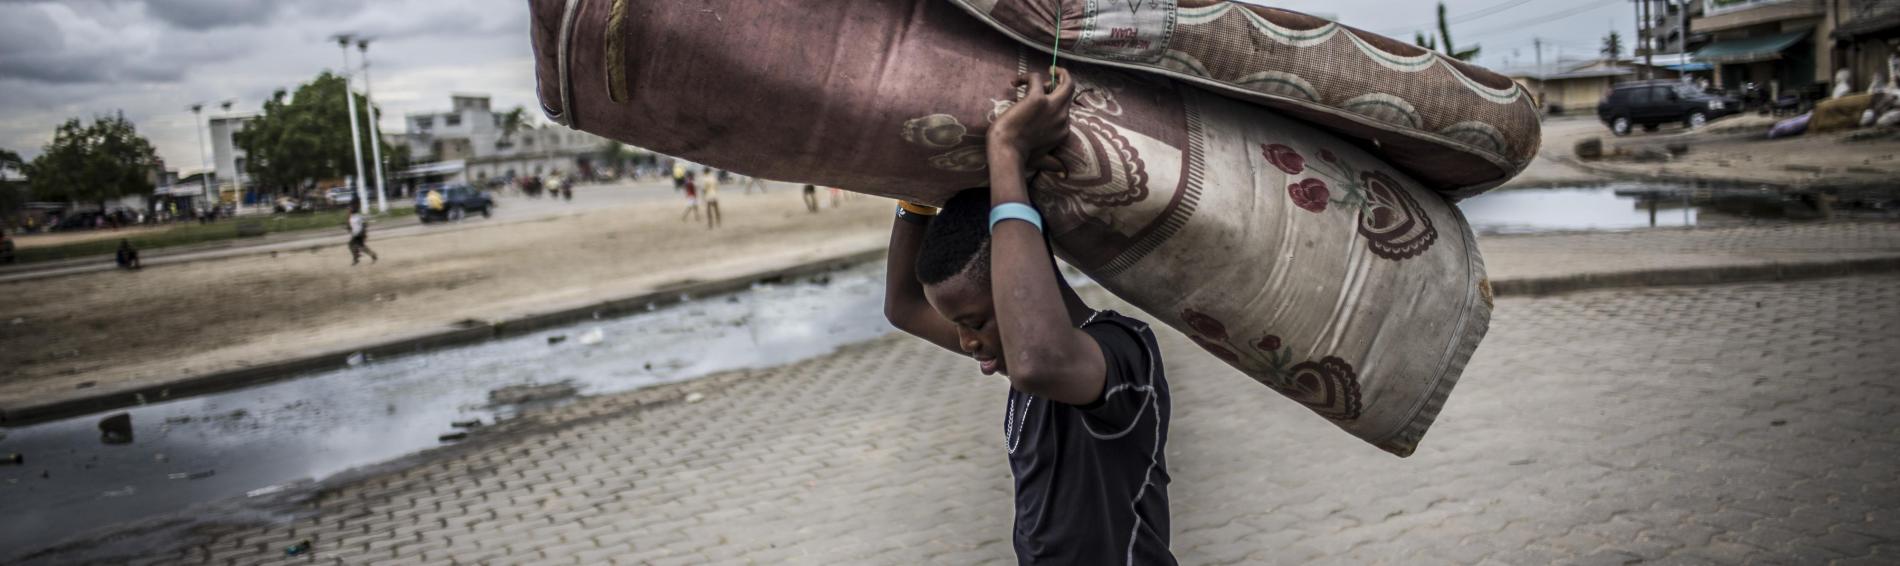 Un adolescent dans la rue au Bénin. Le temps est nuageux, il porte un matelas humide et bien plié sur la tête. À l'arrière-plan, des enfants jouent dans une banlieue déserte.